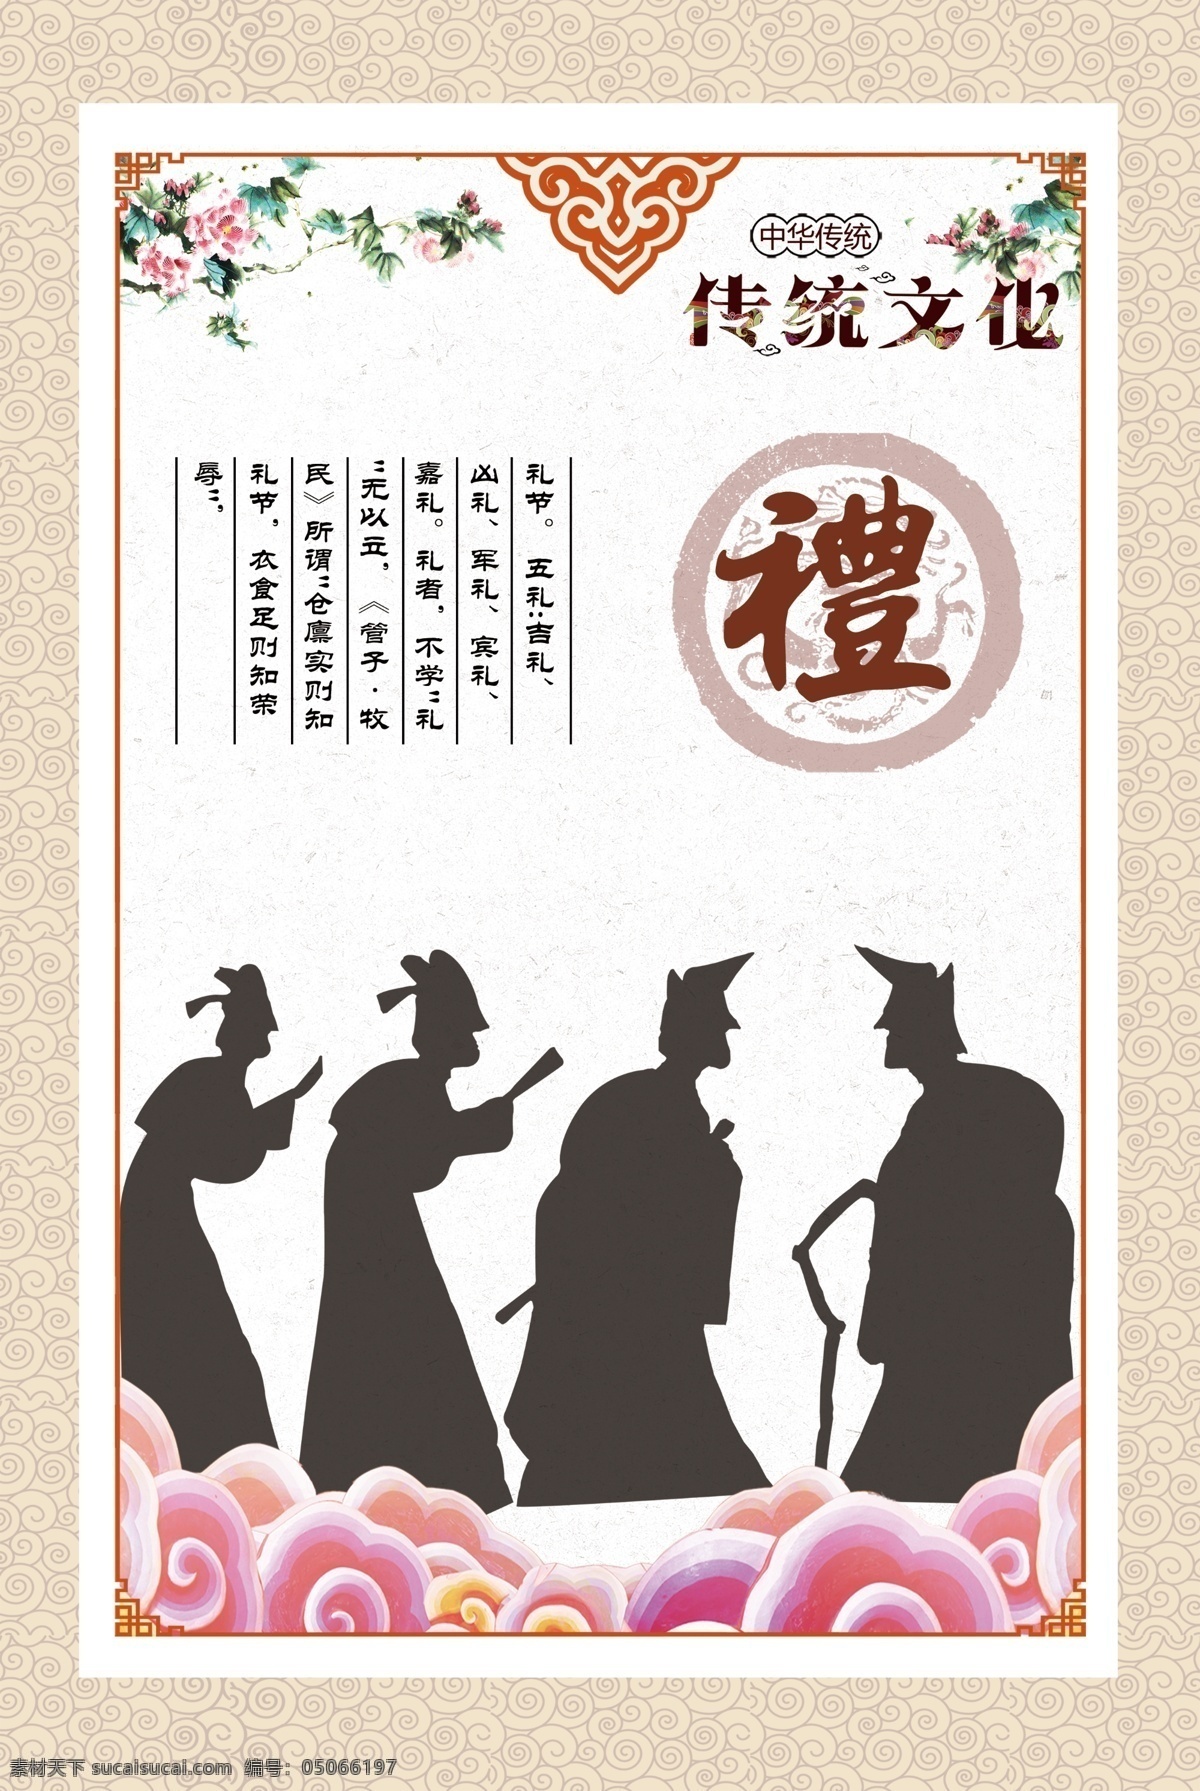 六艺之礼 传统文化 六艺 礼 图像 解释 分层 祥云 古典 图形 牡丹 展板 龙纹